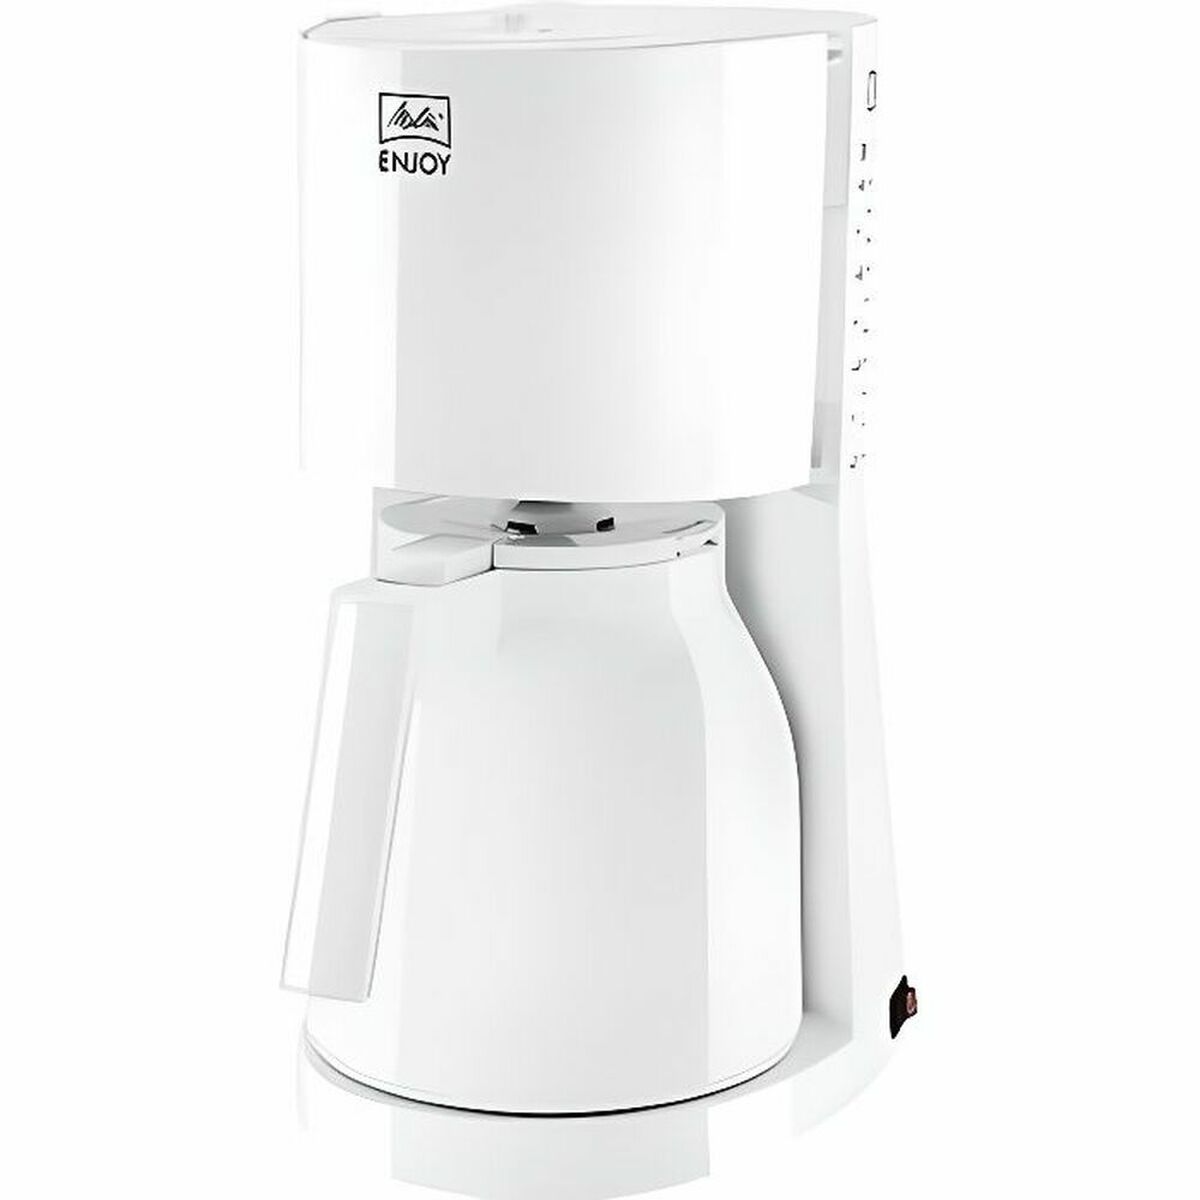 Elektrische Kaffeemaschine Melitta 1017-05 1000 W Weiß 1000 W 8 Kopper - CA International 